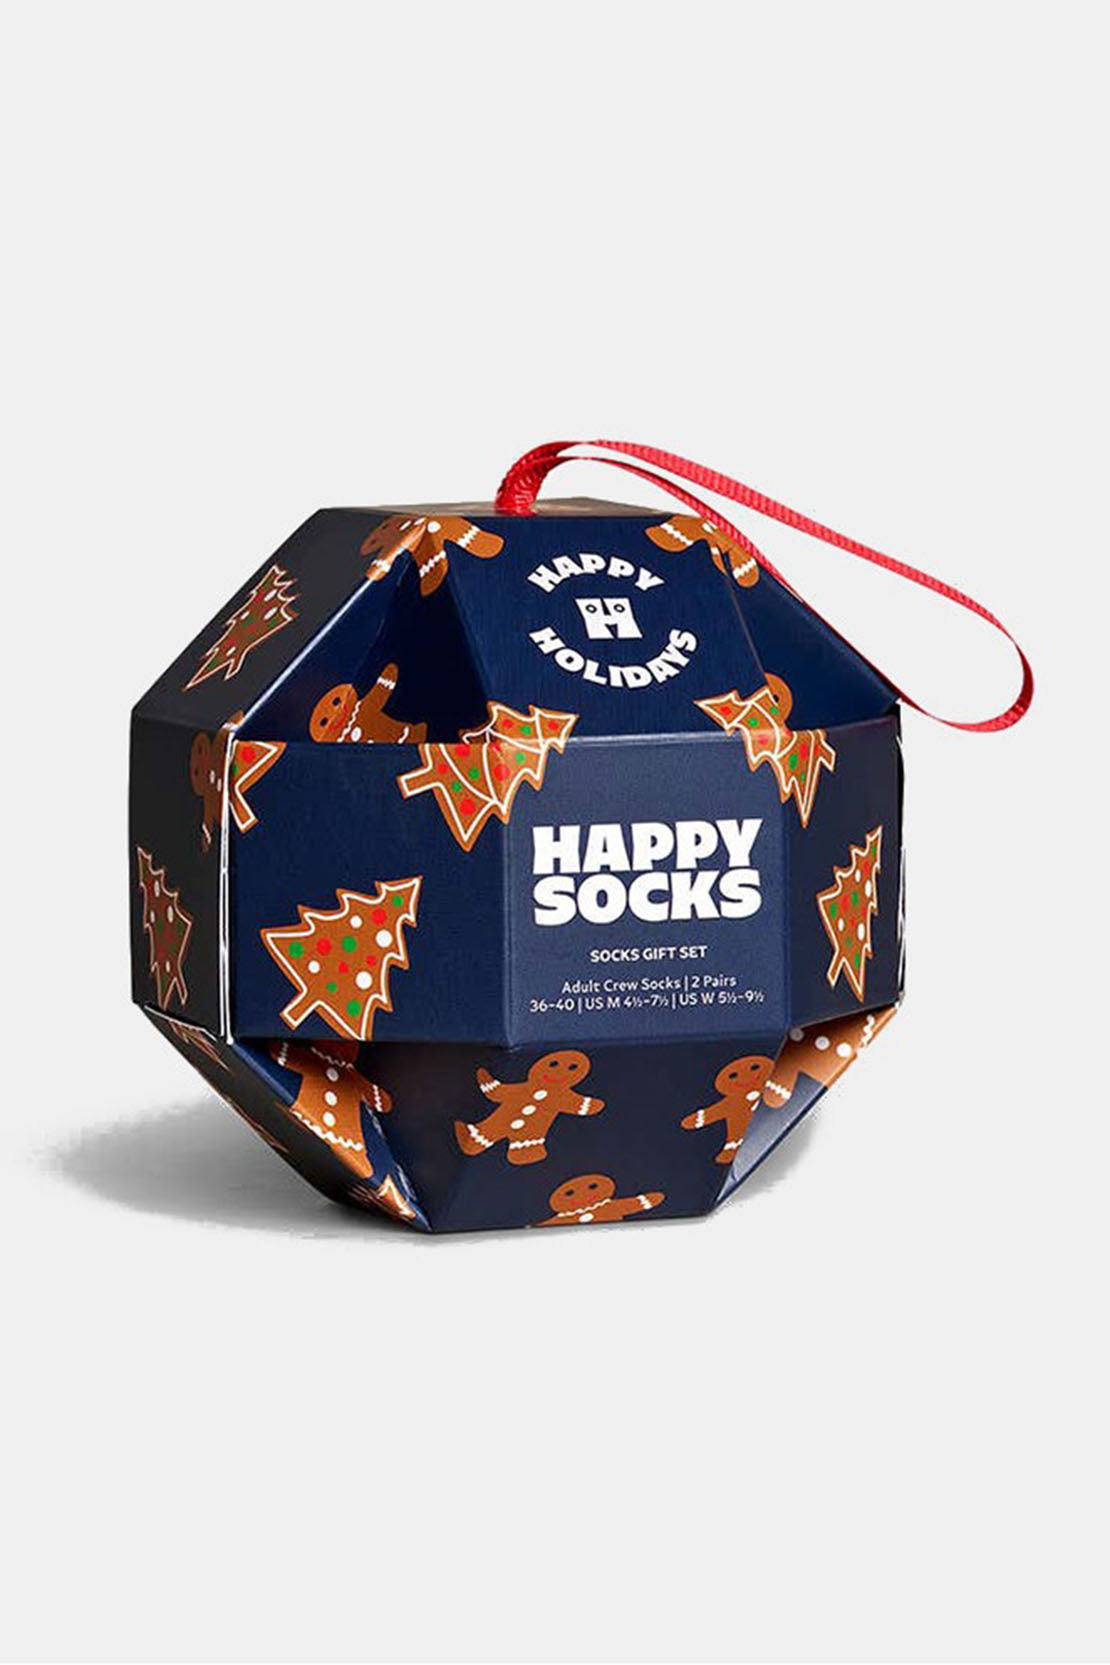 HAPPY SOCKS - 1 PACK GINGERBREAD COOKIES Socks Bauble Gift Set P000405